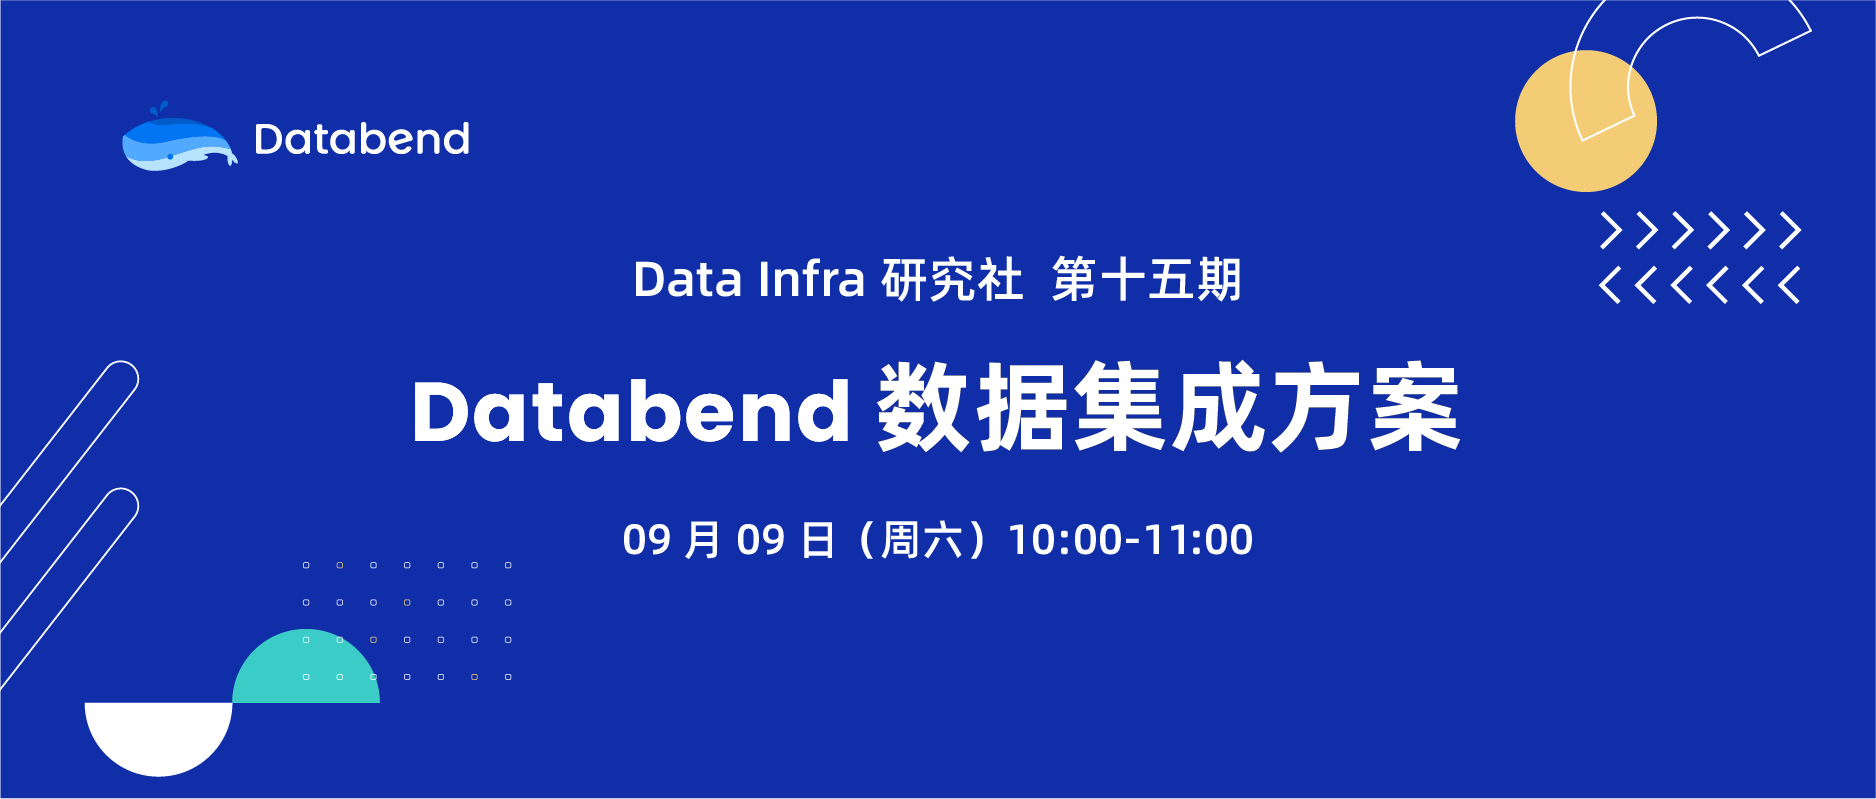 Databend 数据集成方案 | Data Infra 第 15 期